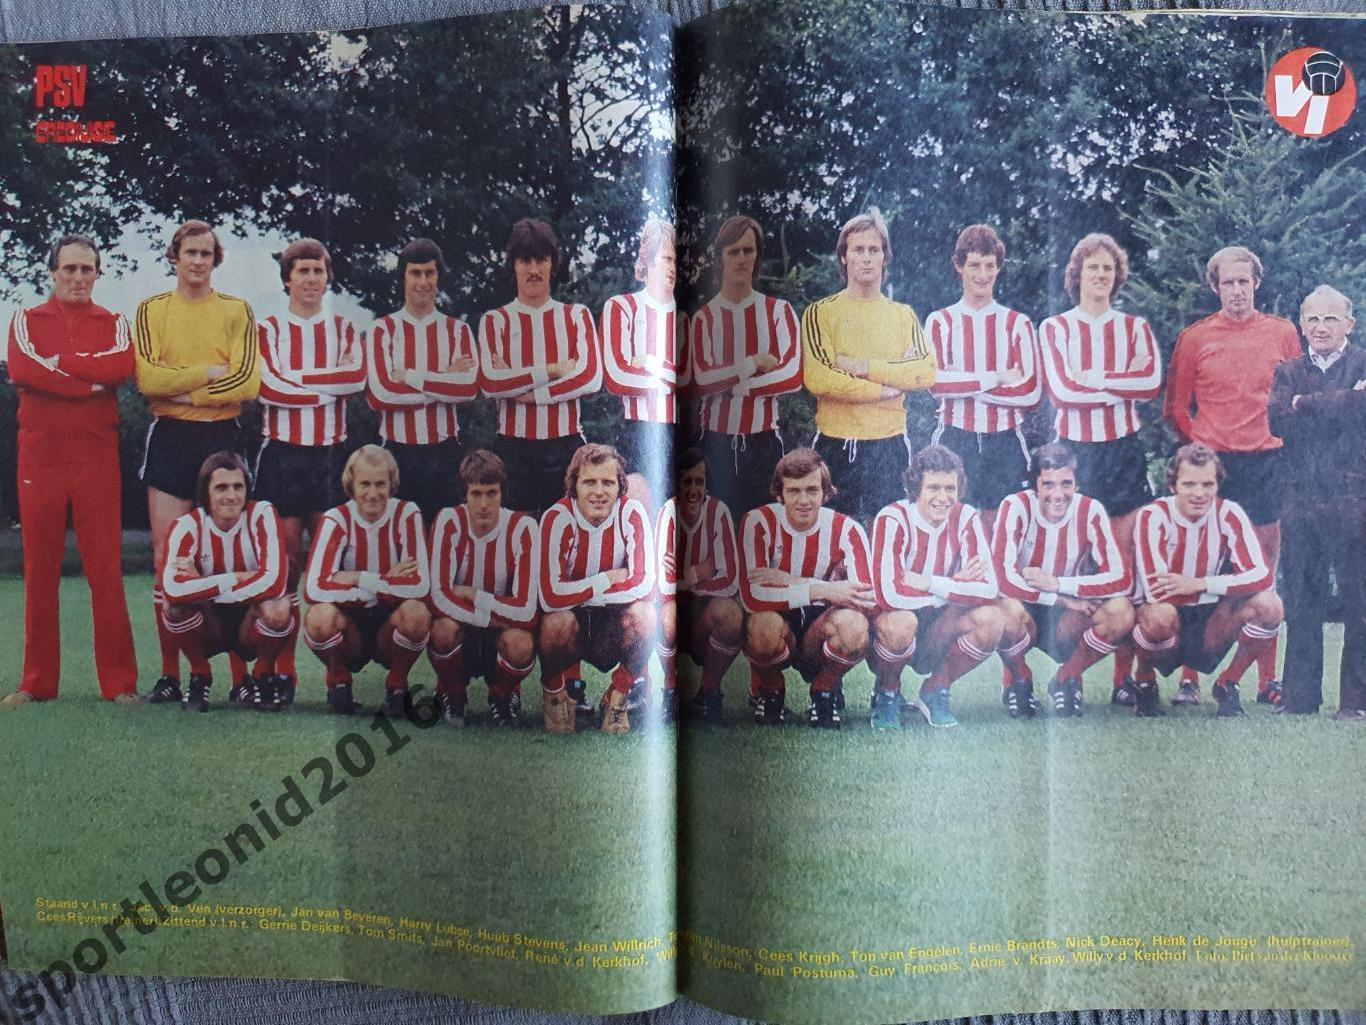 Voetbal International 1977 51 выпуск годовая подписка .3 1